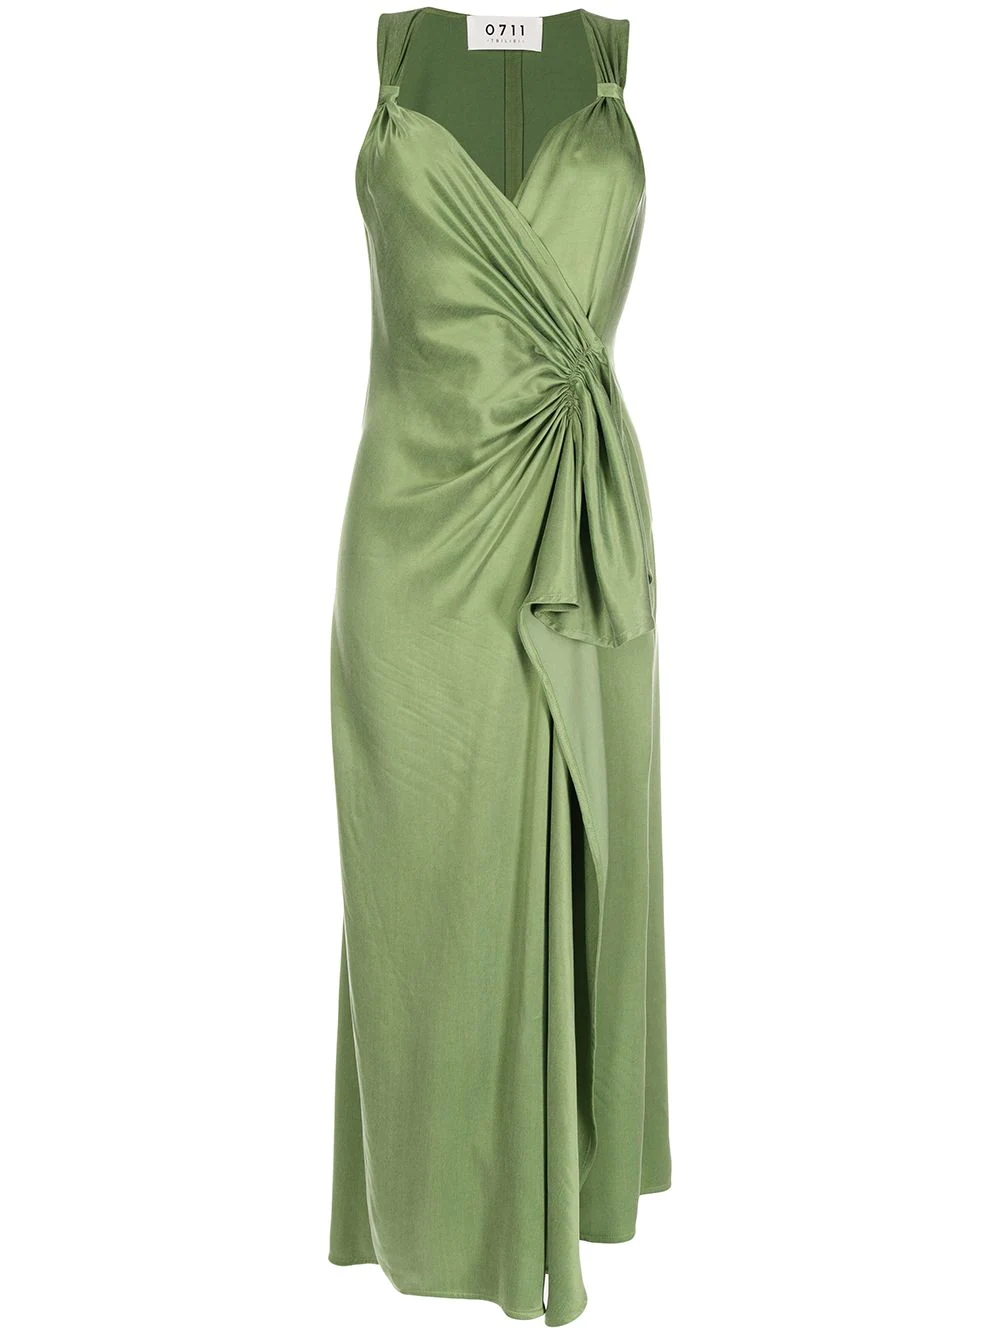 Платья лаймовых оттенков - "свежая" идея на лето, которую подсказала нам Хейли Бибер